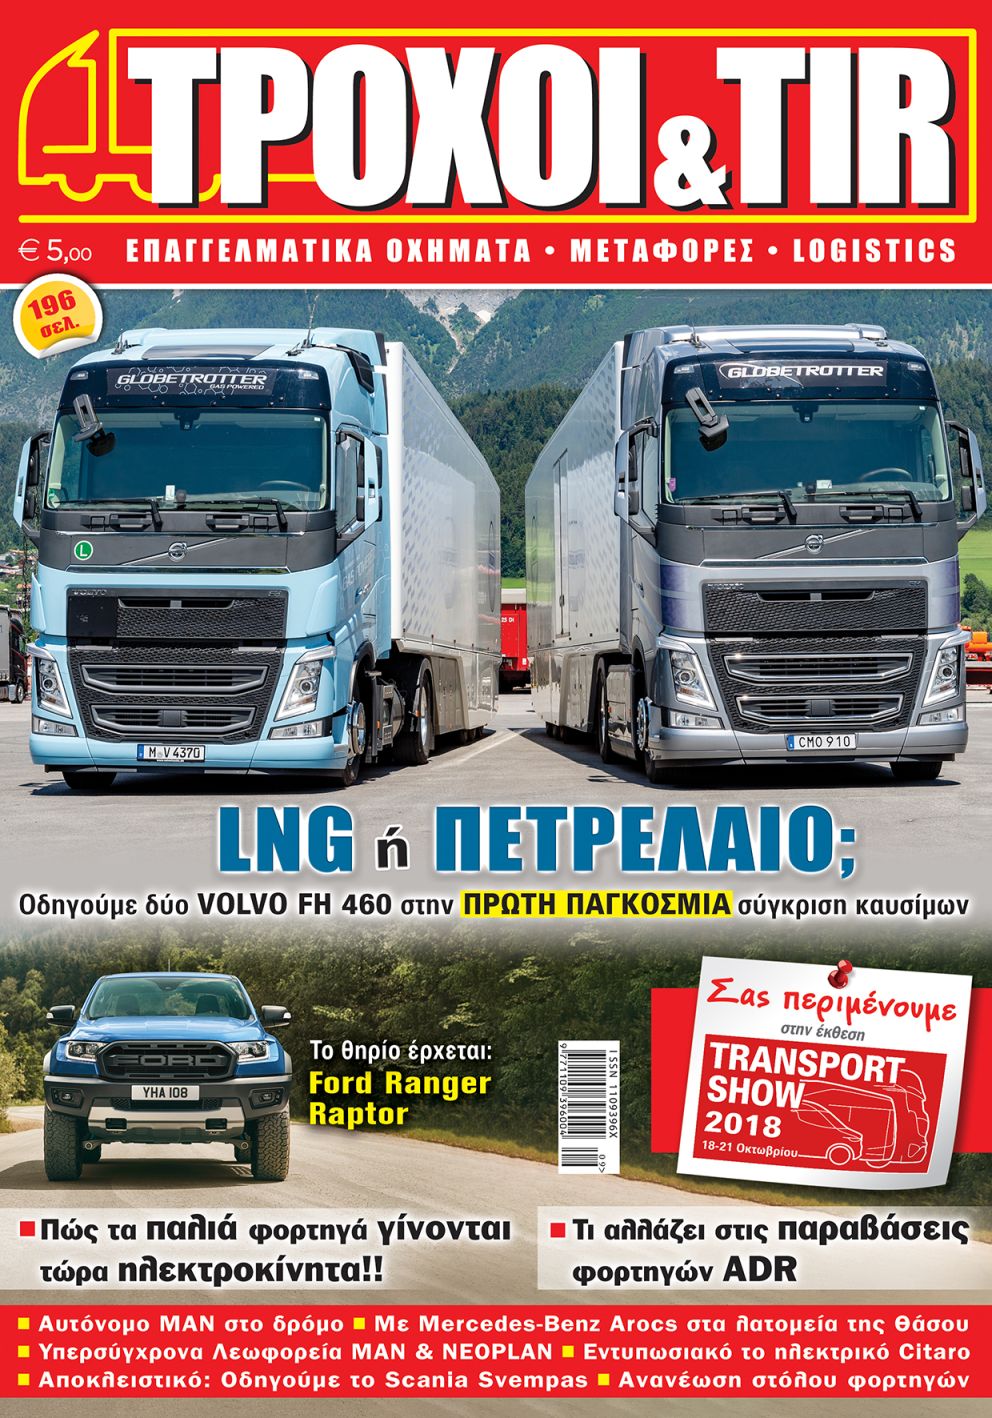 Troxoikaitir issue 365 september 2018 cover